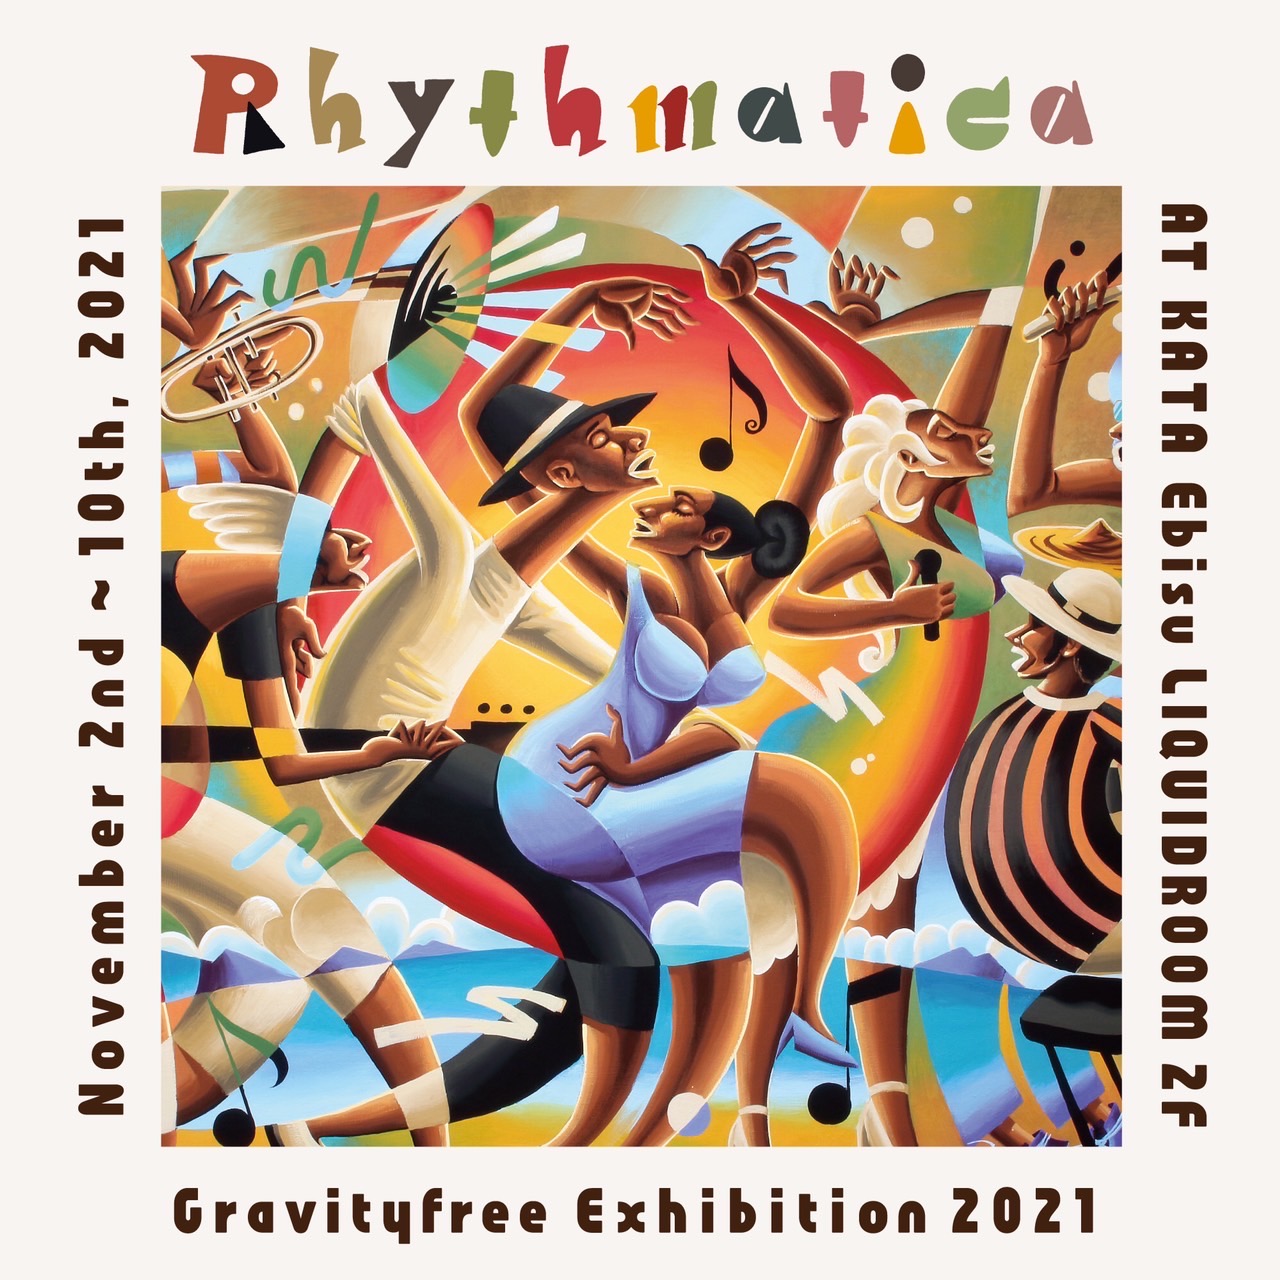 “Rhythmatica Gravityfree Solo Exhibition”